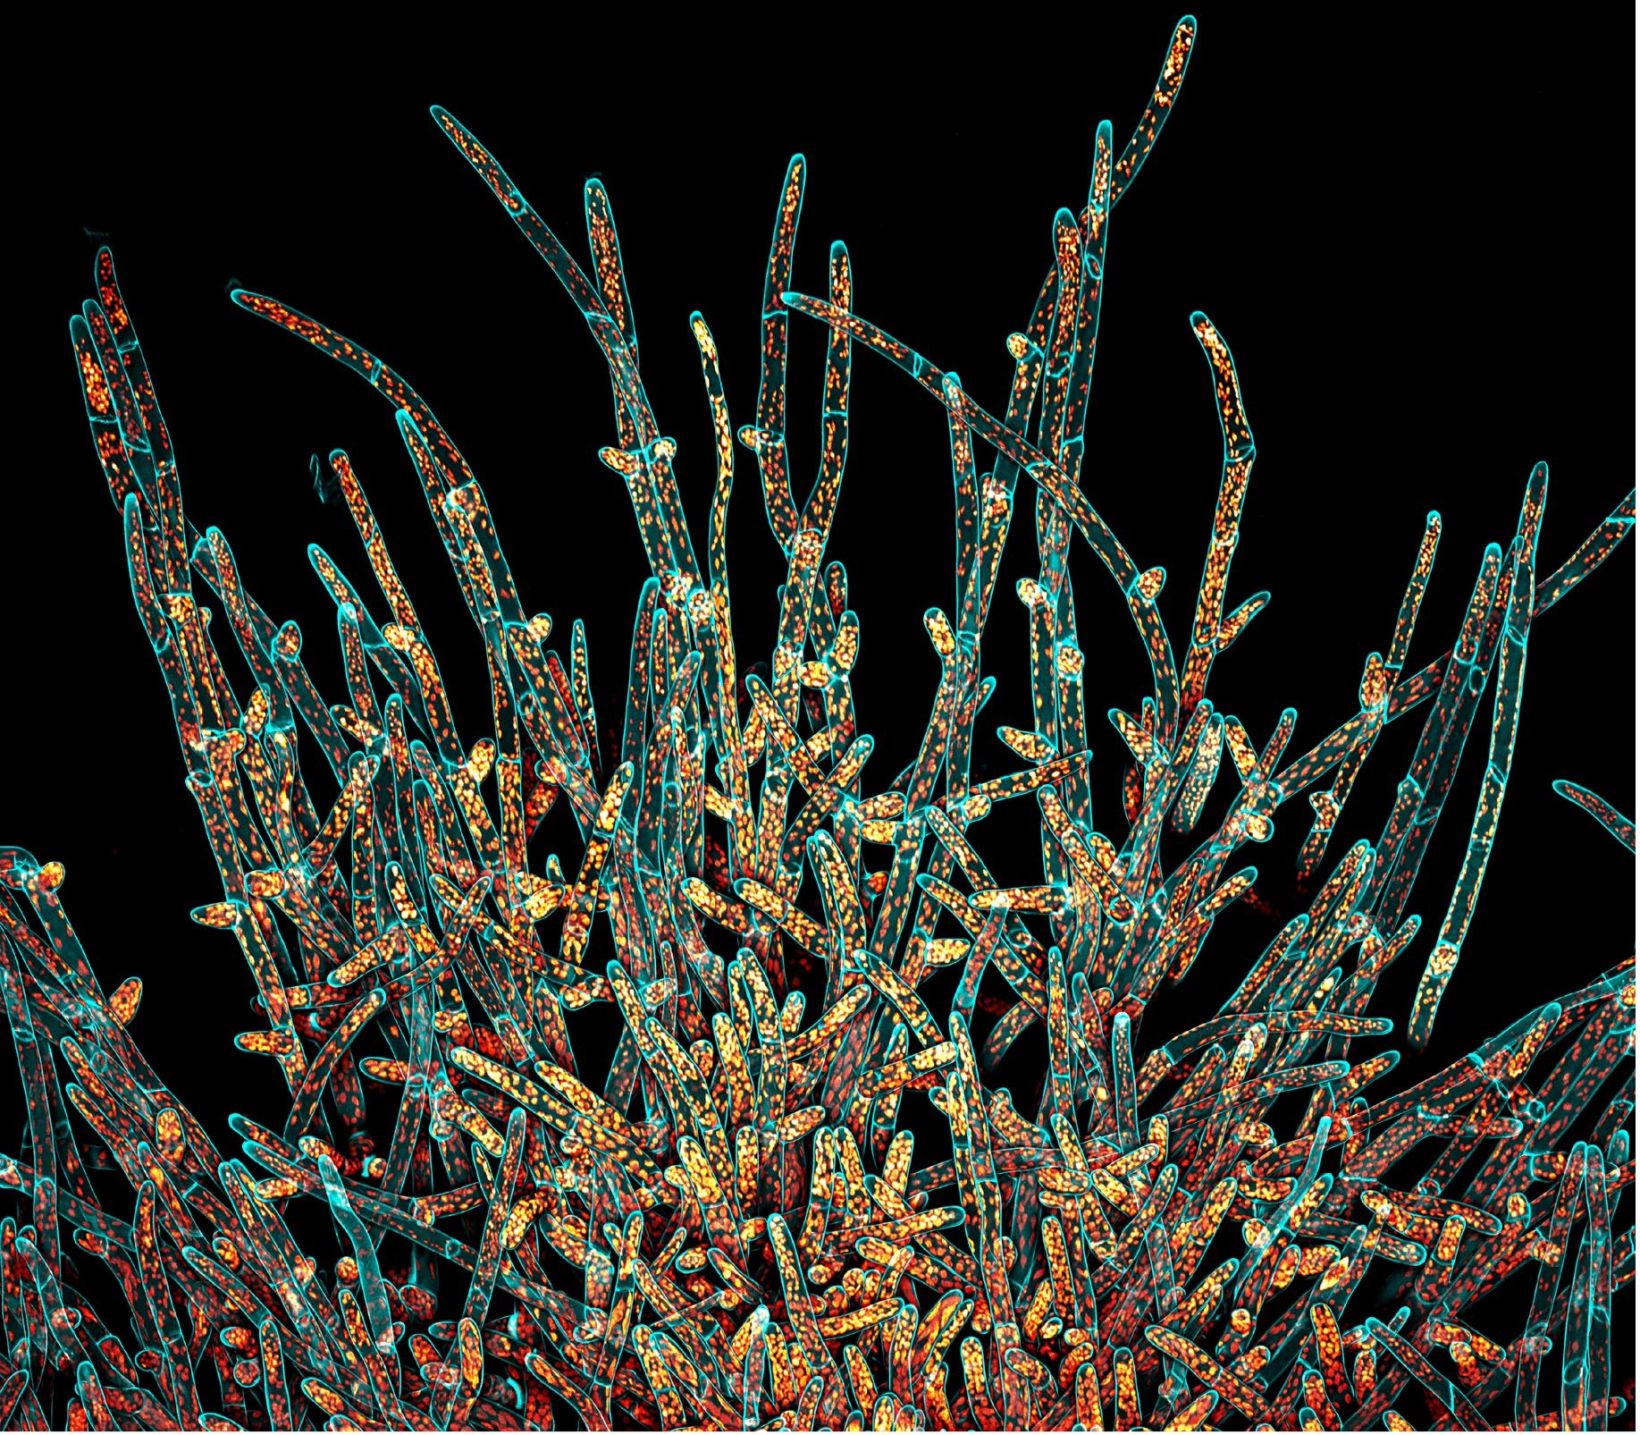 IOTY 2021 Americas Gewinnerbild mit Darstellung von Protonema-Zellen des Kleinen Blasenmützenmooses (Physcomitrium patens) 